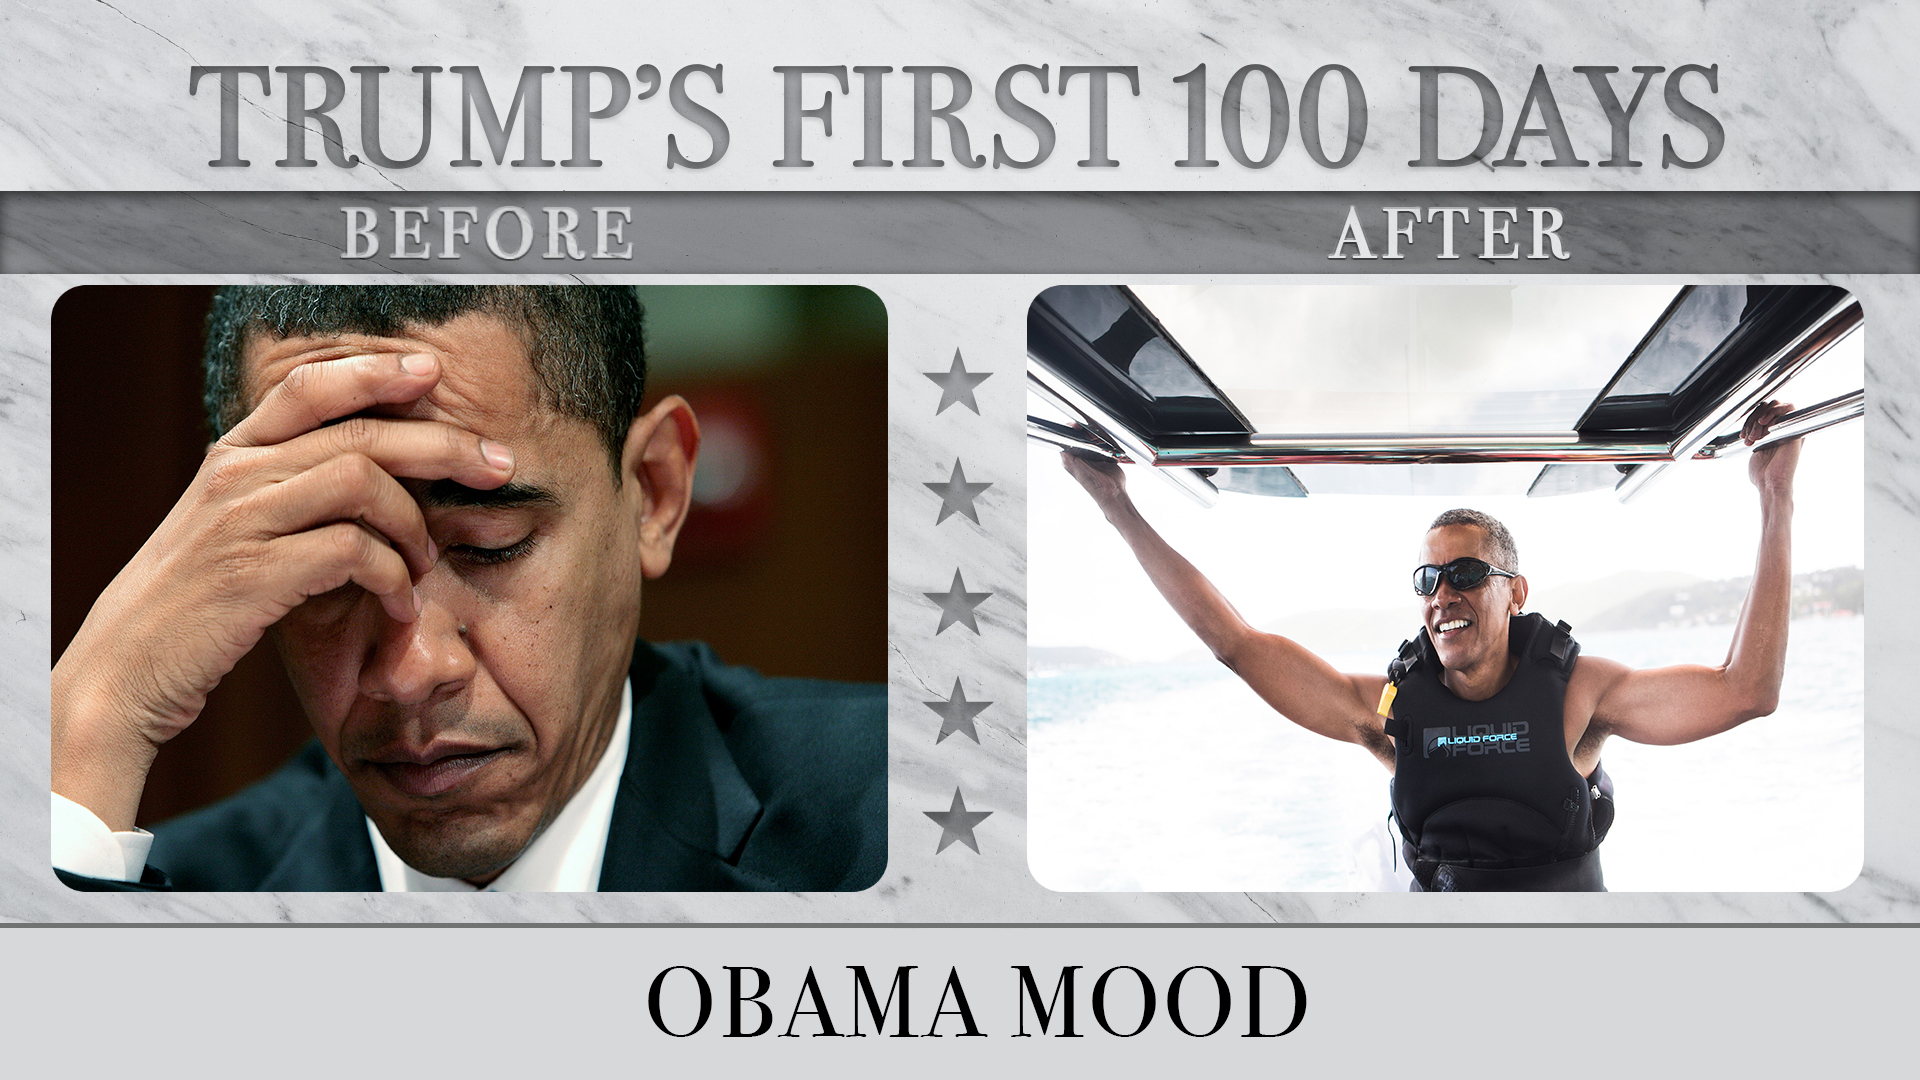 Obama Mood